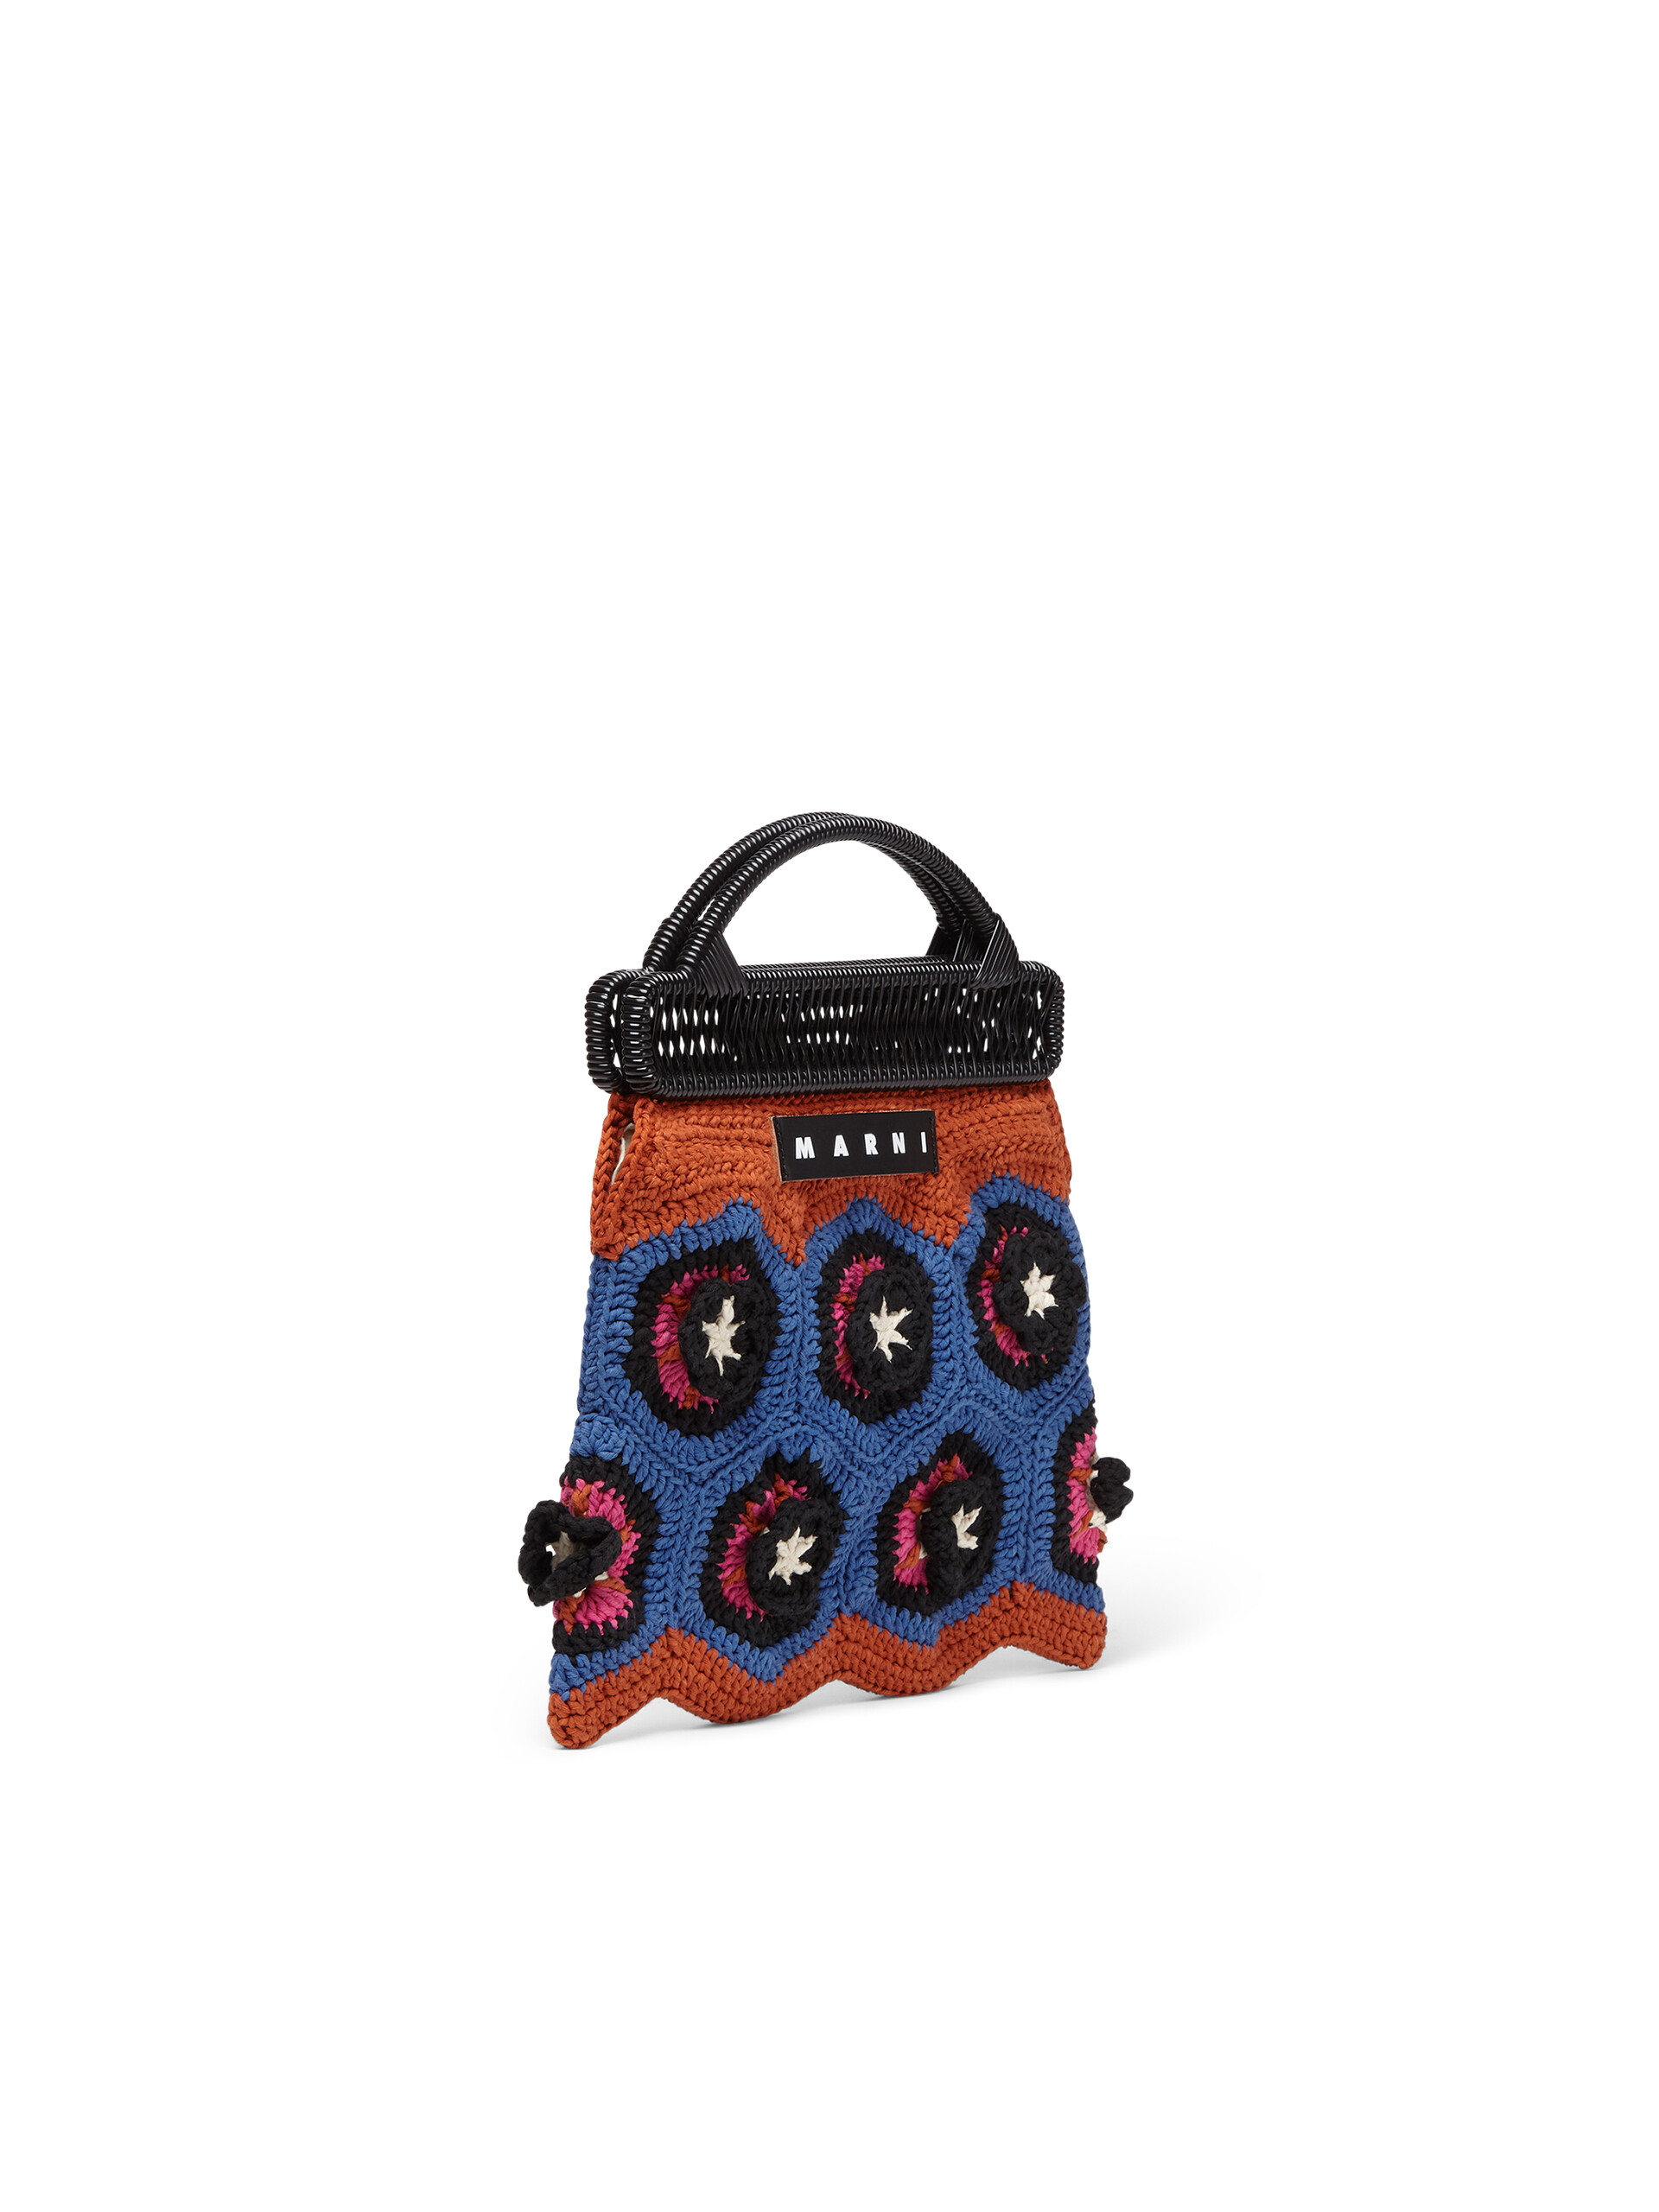 MARNI MARKET frame bag with floral motif in orange and pale blue crochet cotton blend - Furniture - Image 2